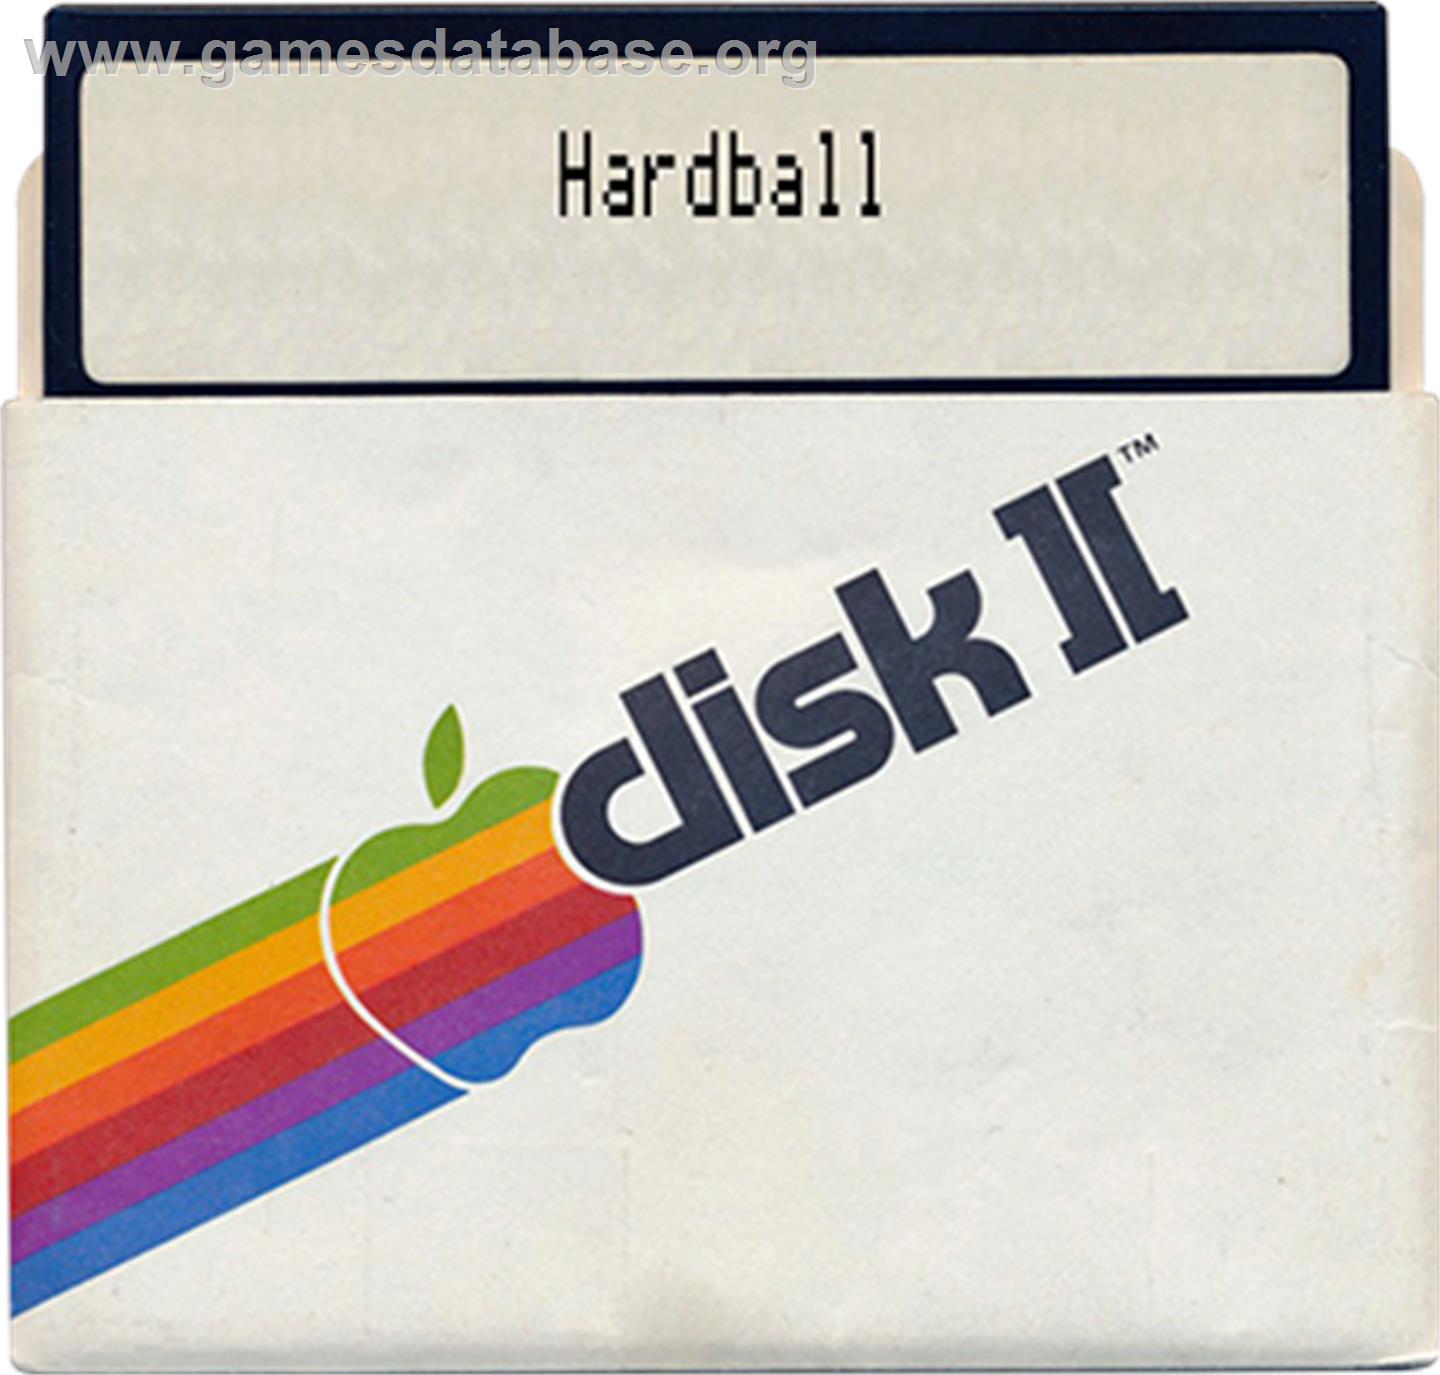 Windfall - Apple II - Artwork - Disc